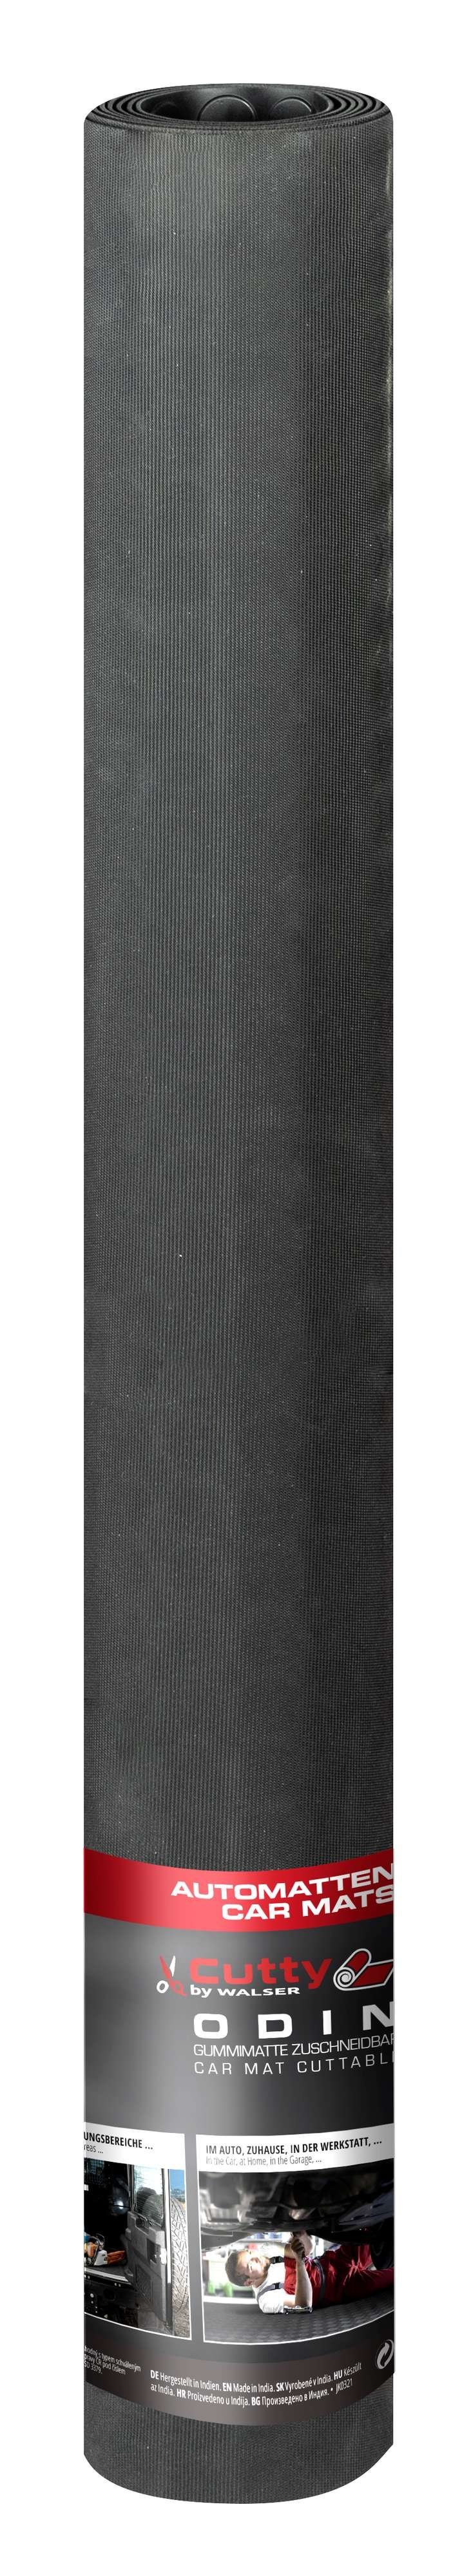 Automat Odin geribbeld, op maat gesneden automat 300x100 cm, universele beschermmat, kofferbakmat, vuilvangmat zwart